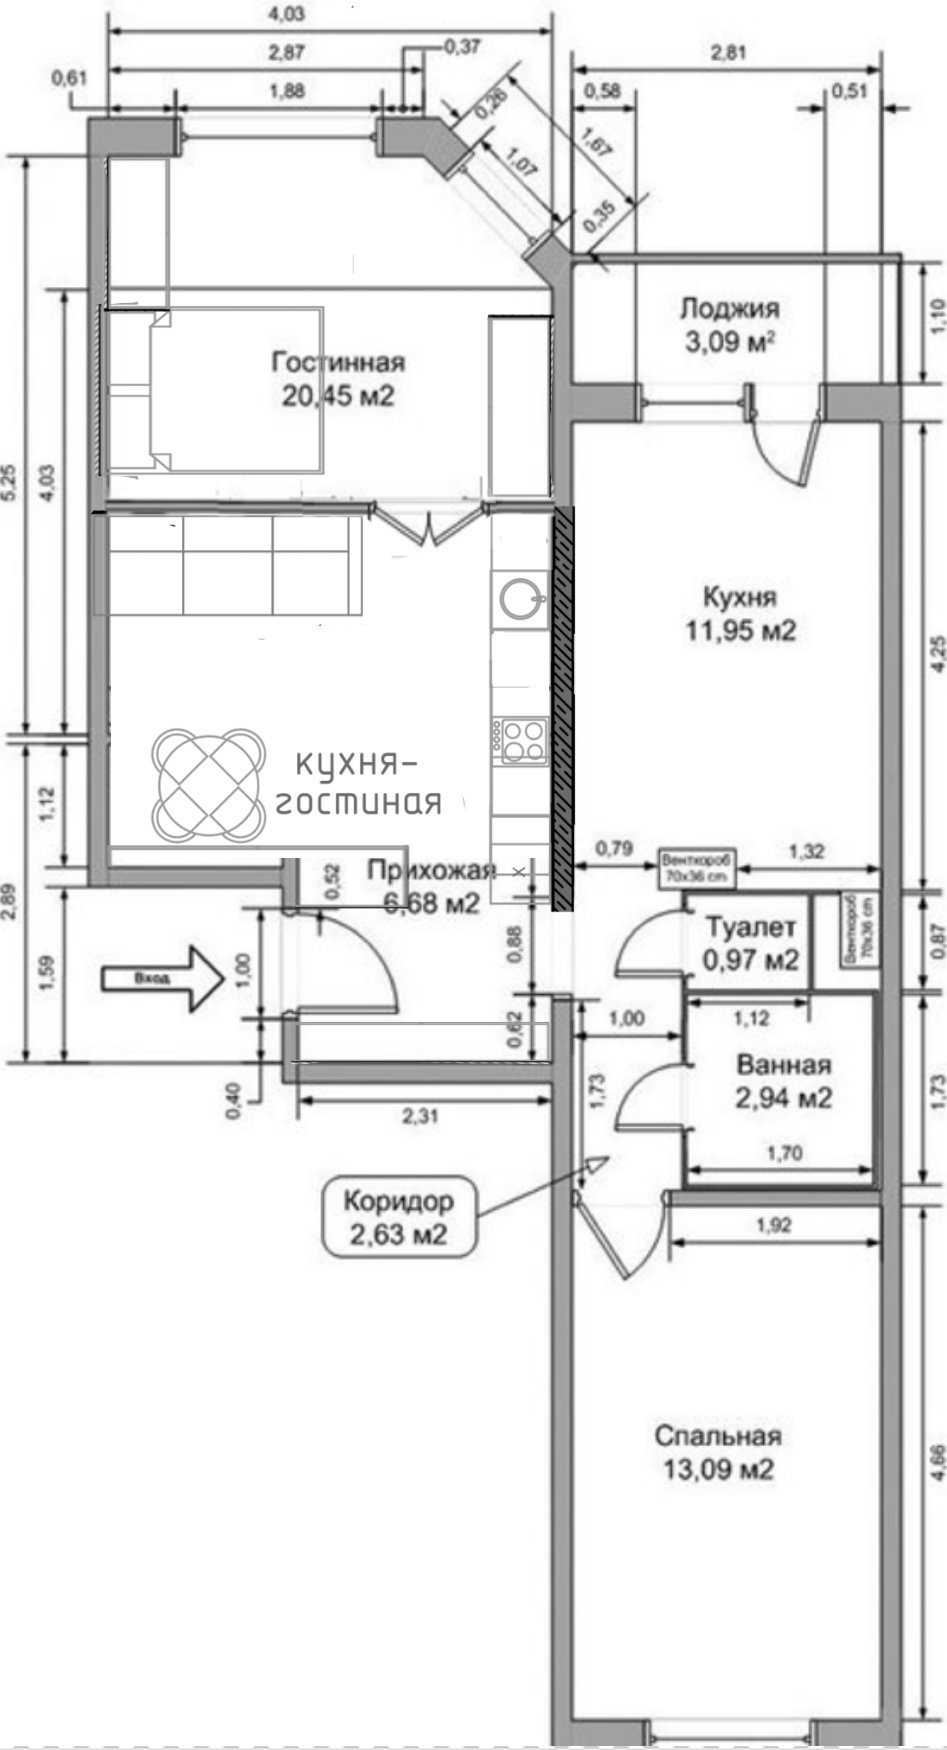 ИП-46с планировка 2-х комнатная квартира